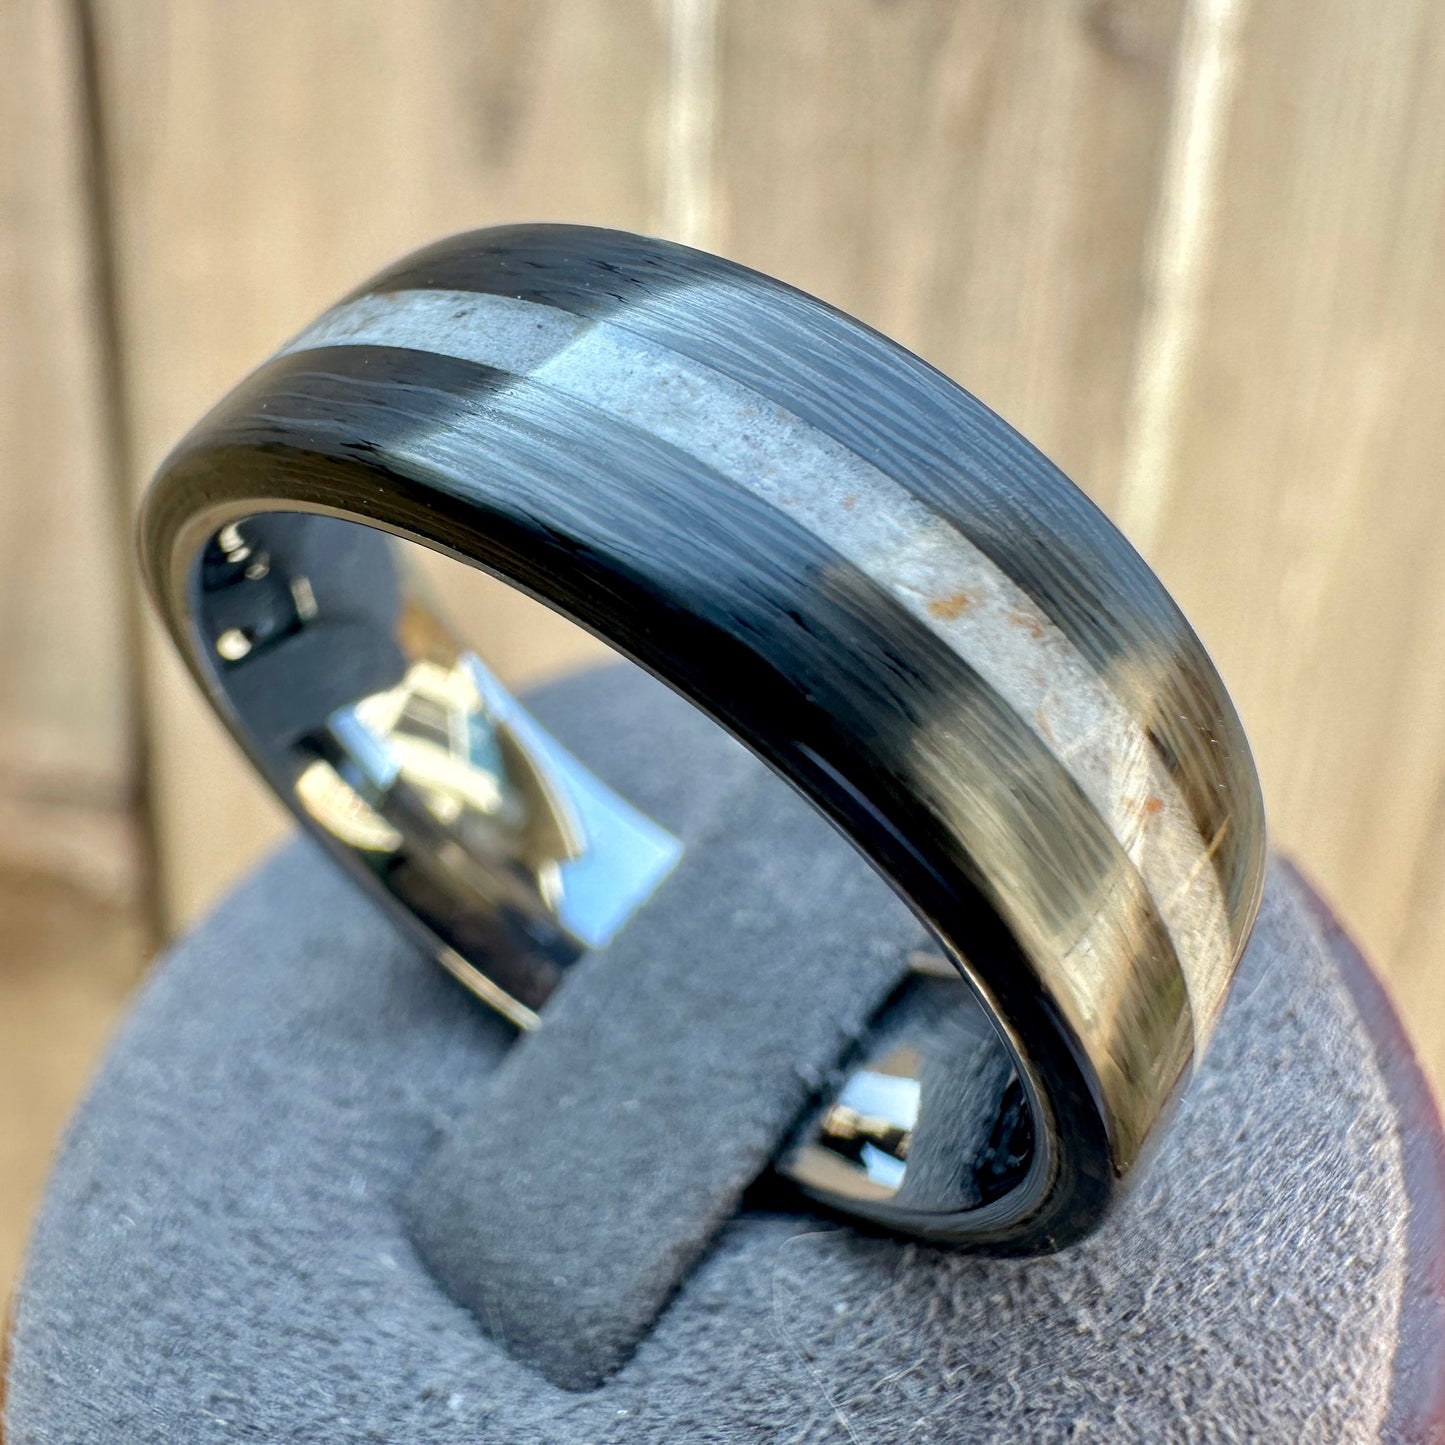 8mm Carbon Fiber Cremation Ring